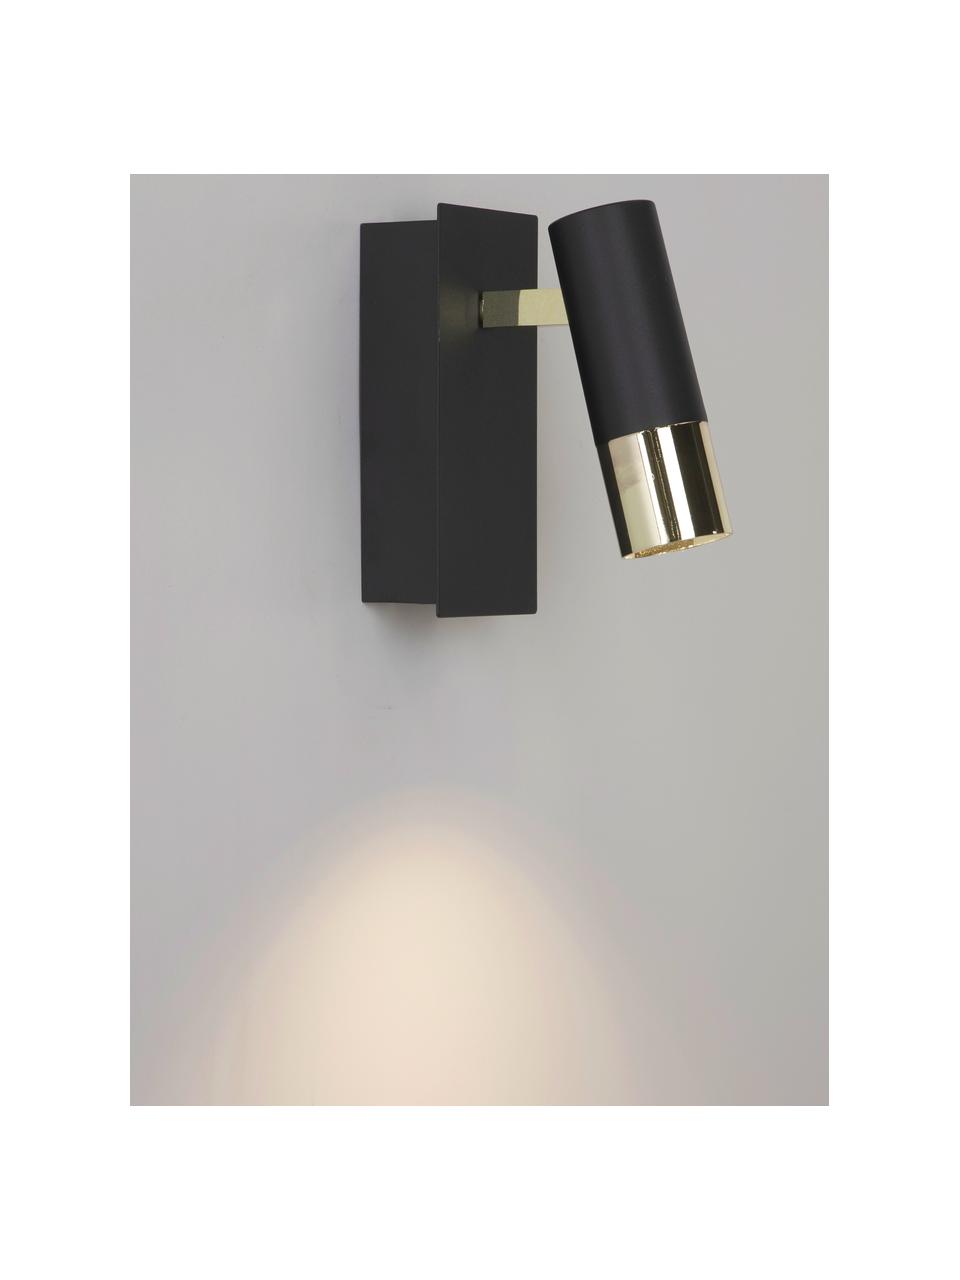 Verstellbarer LED-Wandstrahler Bobby in Schwarz-Gold, Lampenschirm: Metall, pulverbeschichtet, Schwarz, Goldfarben, B 7 x H 15 cm